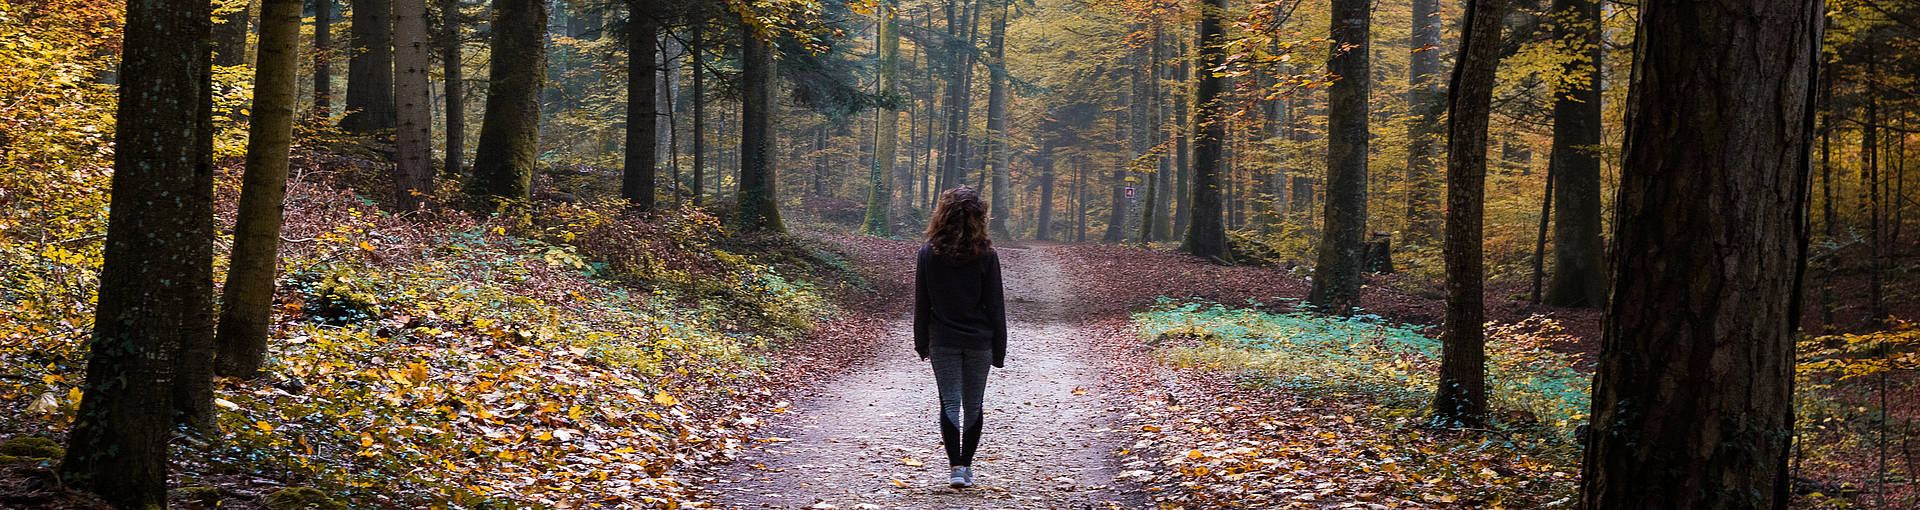 Une jeune femme se promène dans la forêt automnale